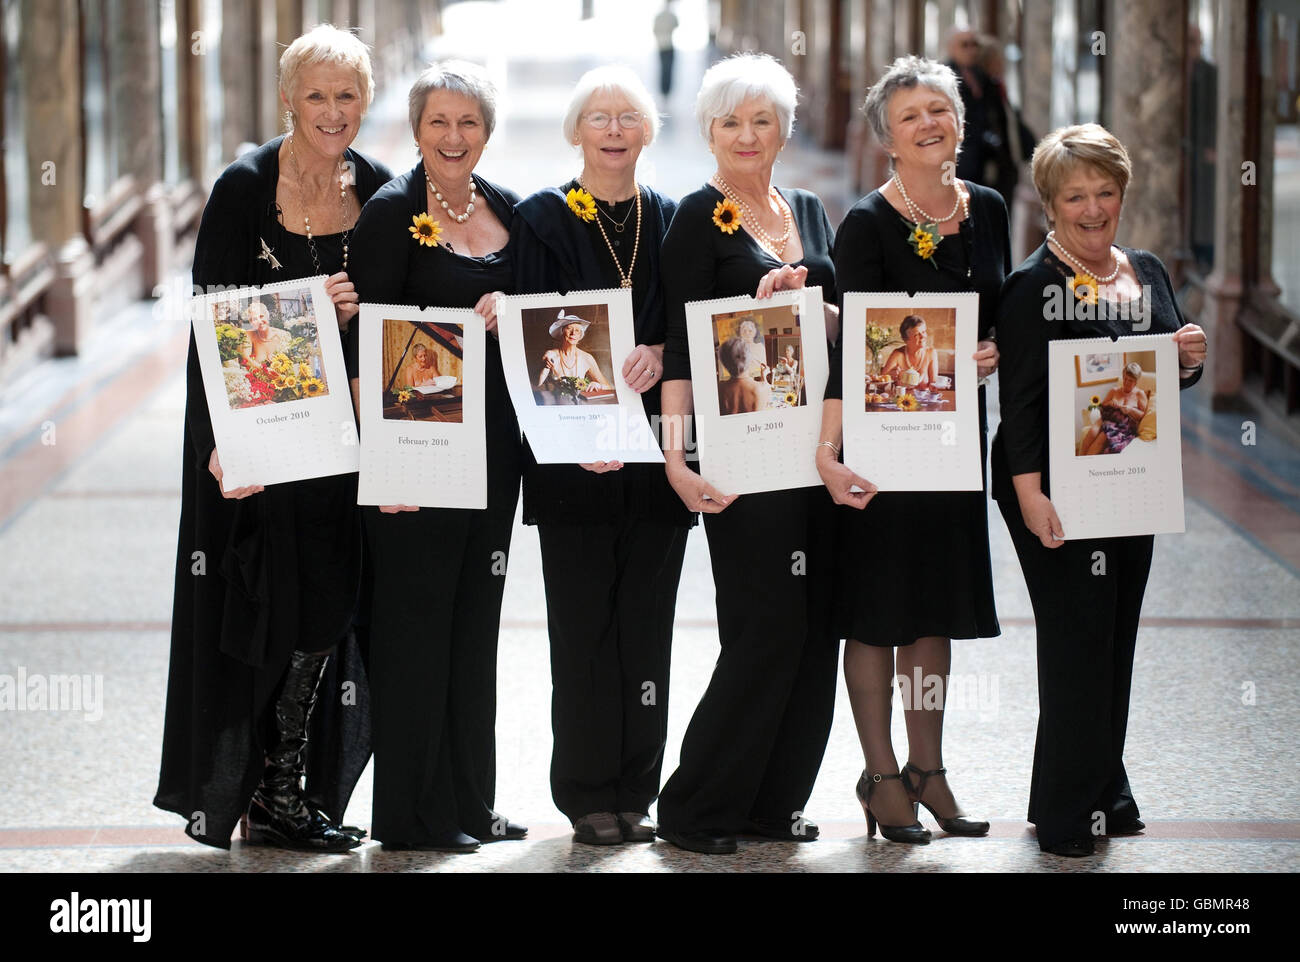 Les filles du calendrier (de gauche à droite) Tricia Stewart, Angela Baker, Beryl Bamforth, Lynda Logan, Chris Clancy et Ros Fawcett lors du lancement de leur dernier calendrier à Harvey Nichols à Leeds. Banque D'Images